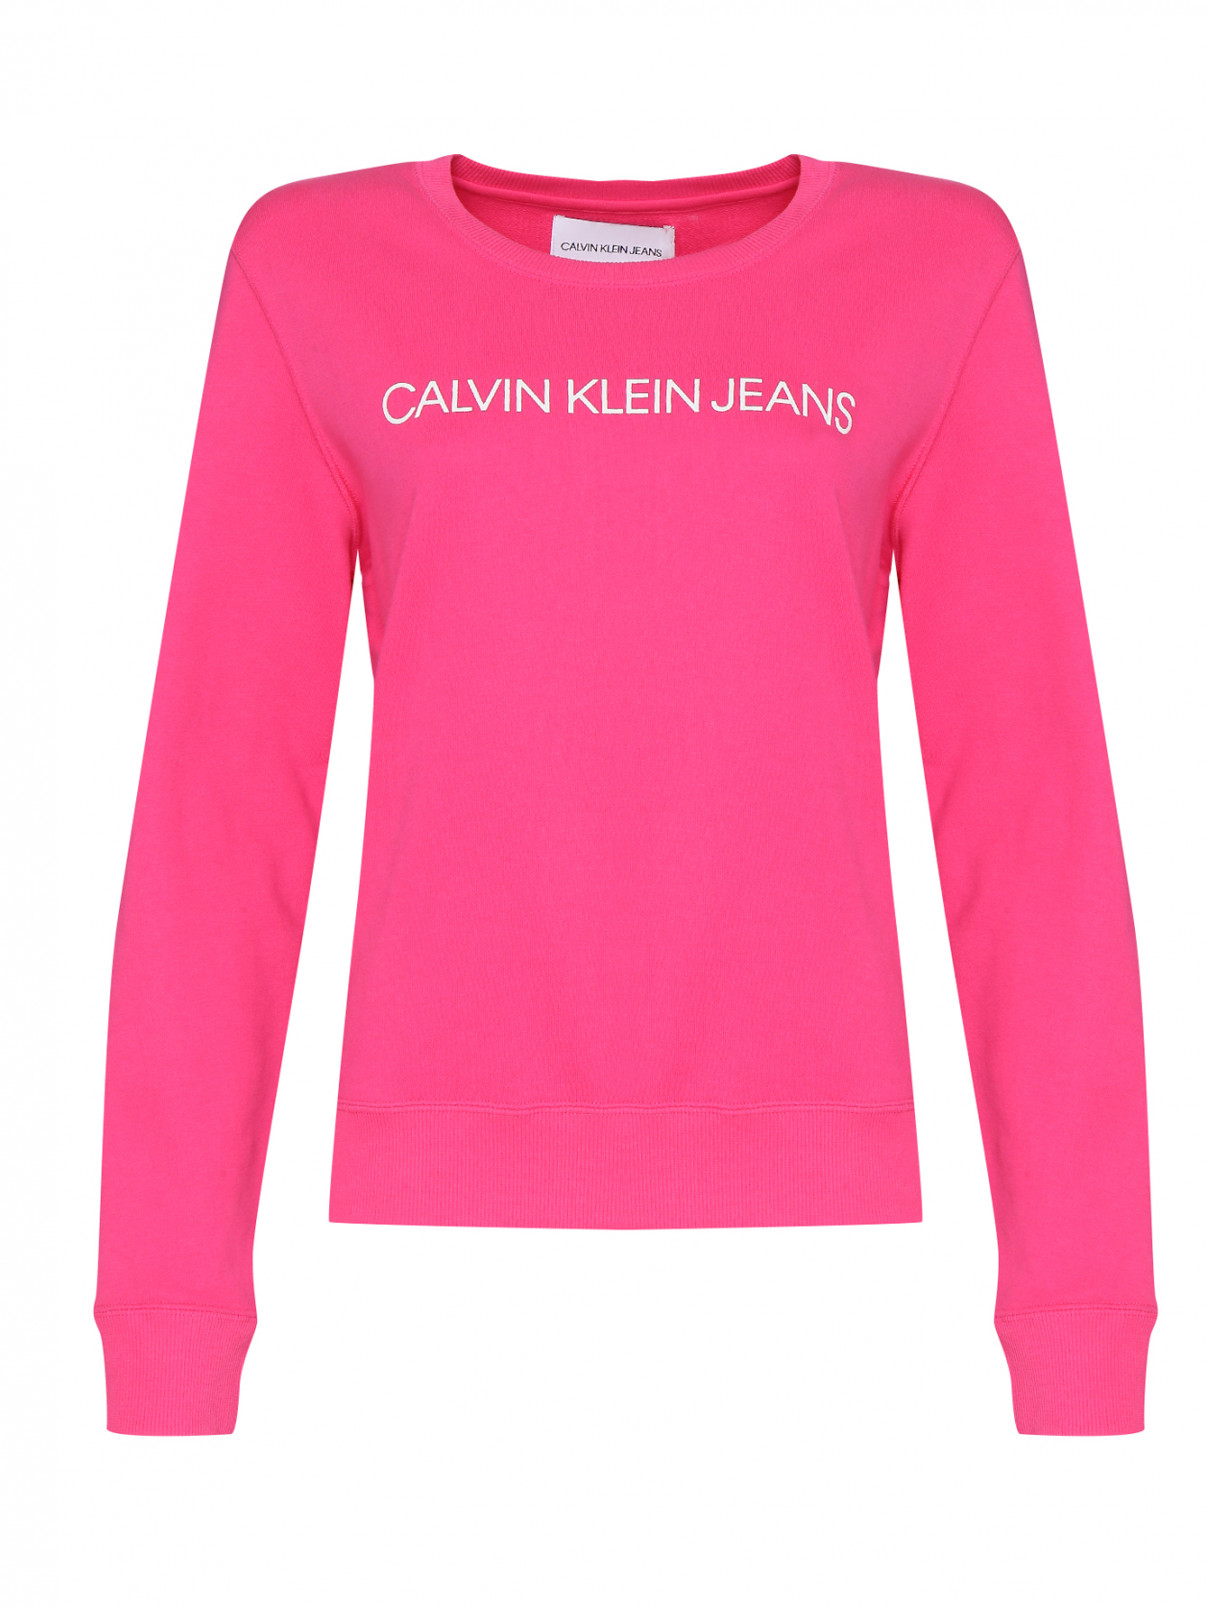 Свитшот из хлопка с принтом Calvin Klein  –  Общий вид  – Цвет:  Розовый